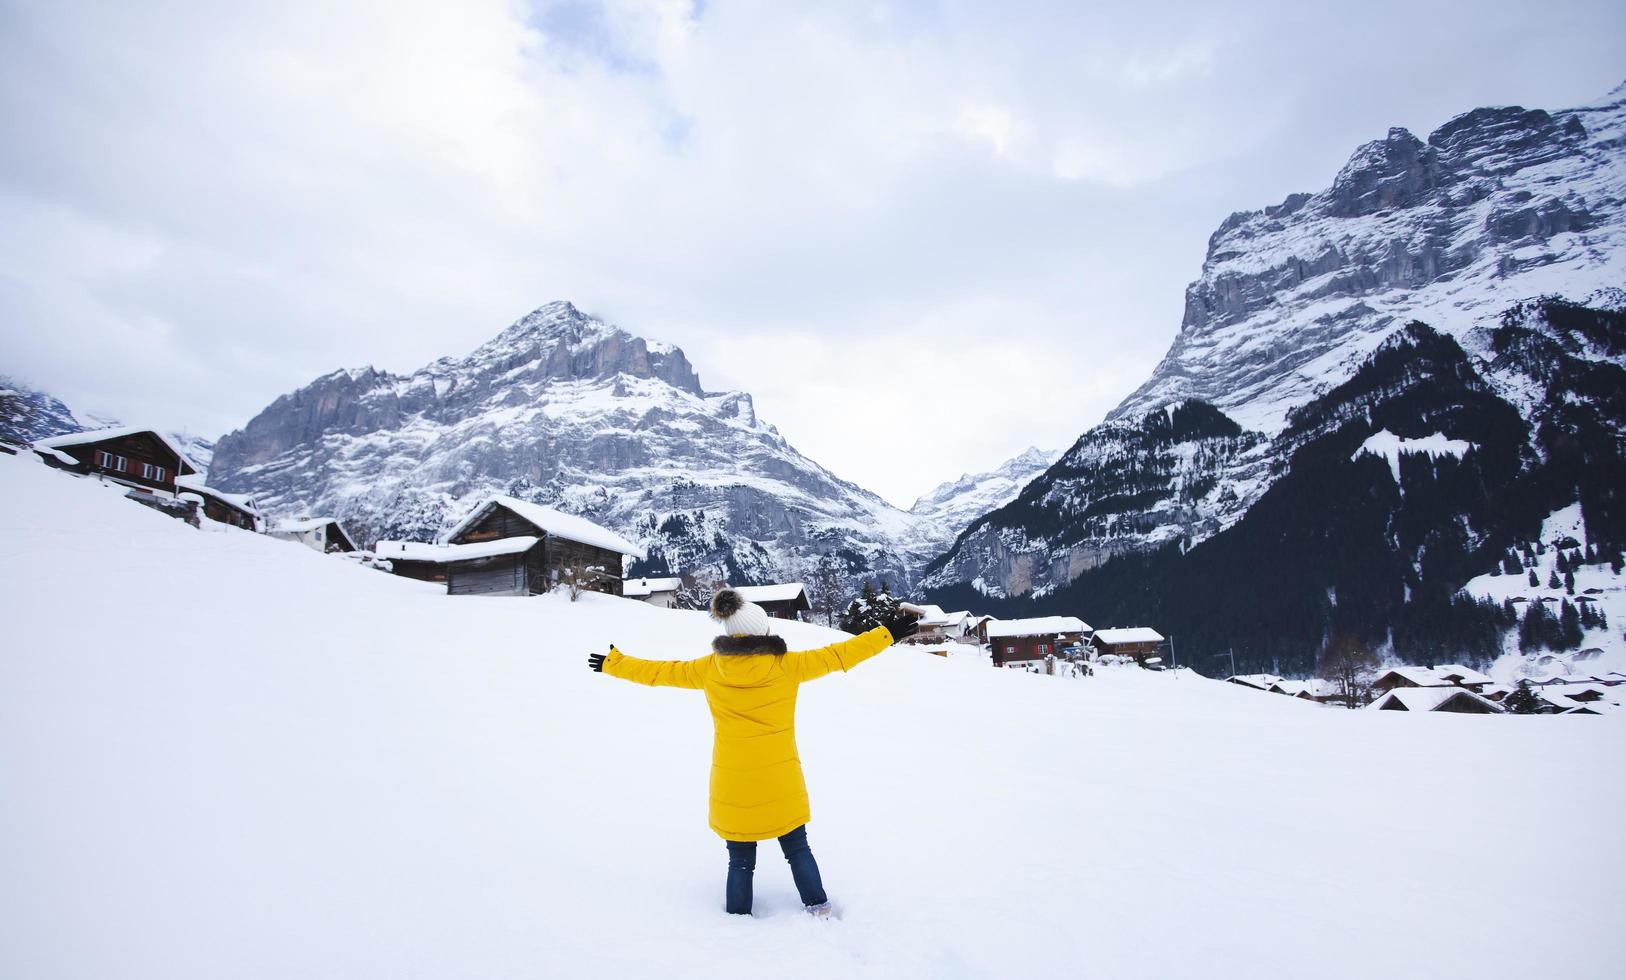 grindelwald svizzera cima d'europa, donna asiatica che indossa un cappotto giallo. usa lo smartphone scatta una foto montagna di neve nella sua vacanza in montagna, viaggio inverno nevoso sul monte a grindelwald.